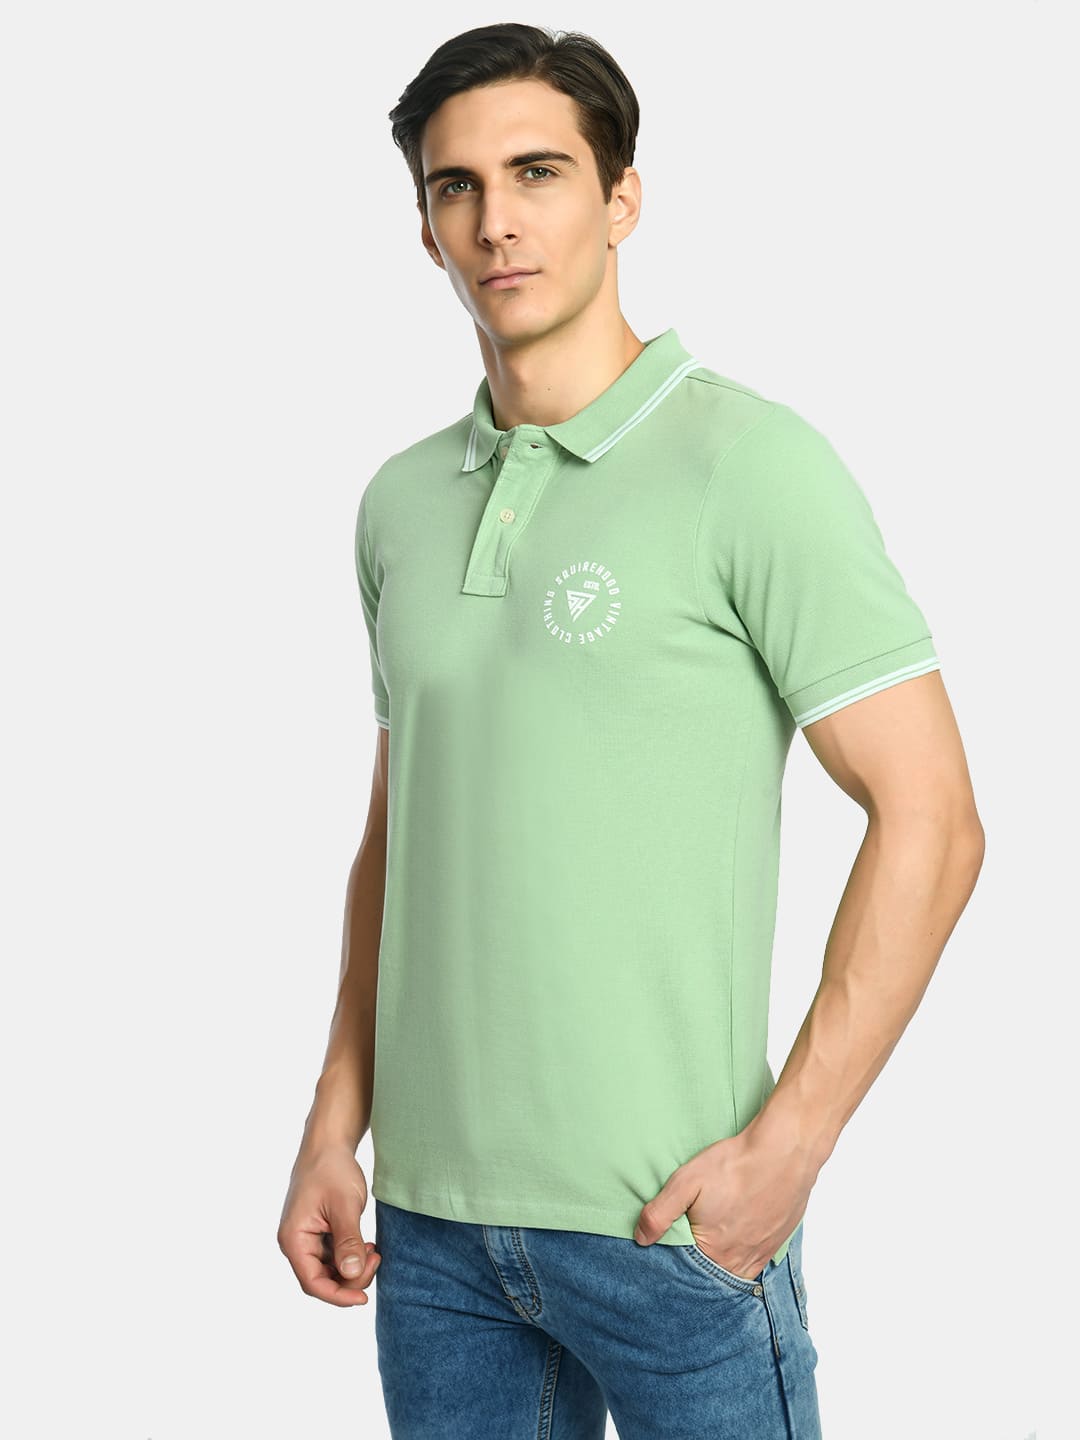 Men's Solid Aqua Green Polo T-Shirt